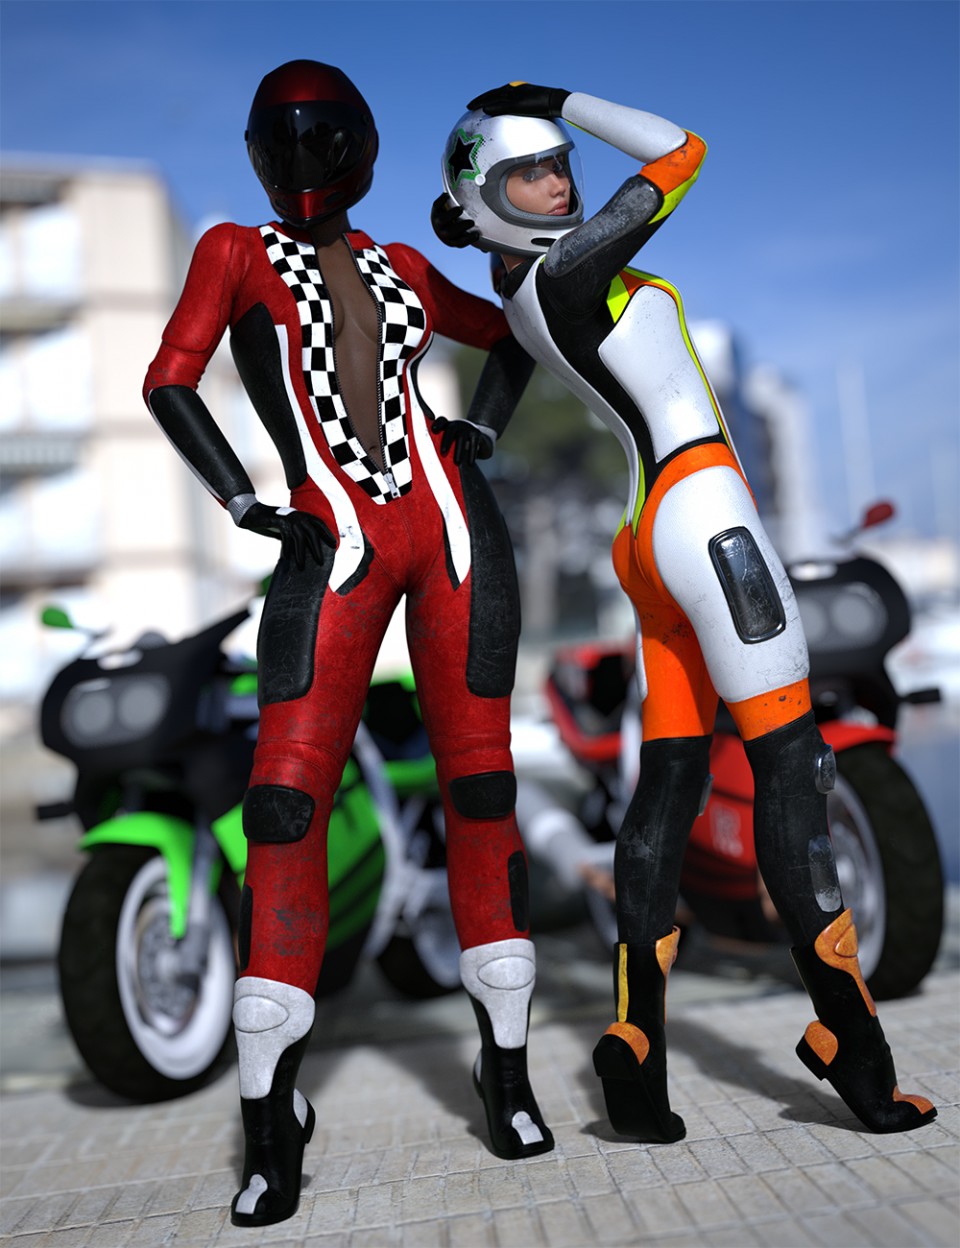 Motorbike Suit Outfit Textures_DAZ3D下载站